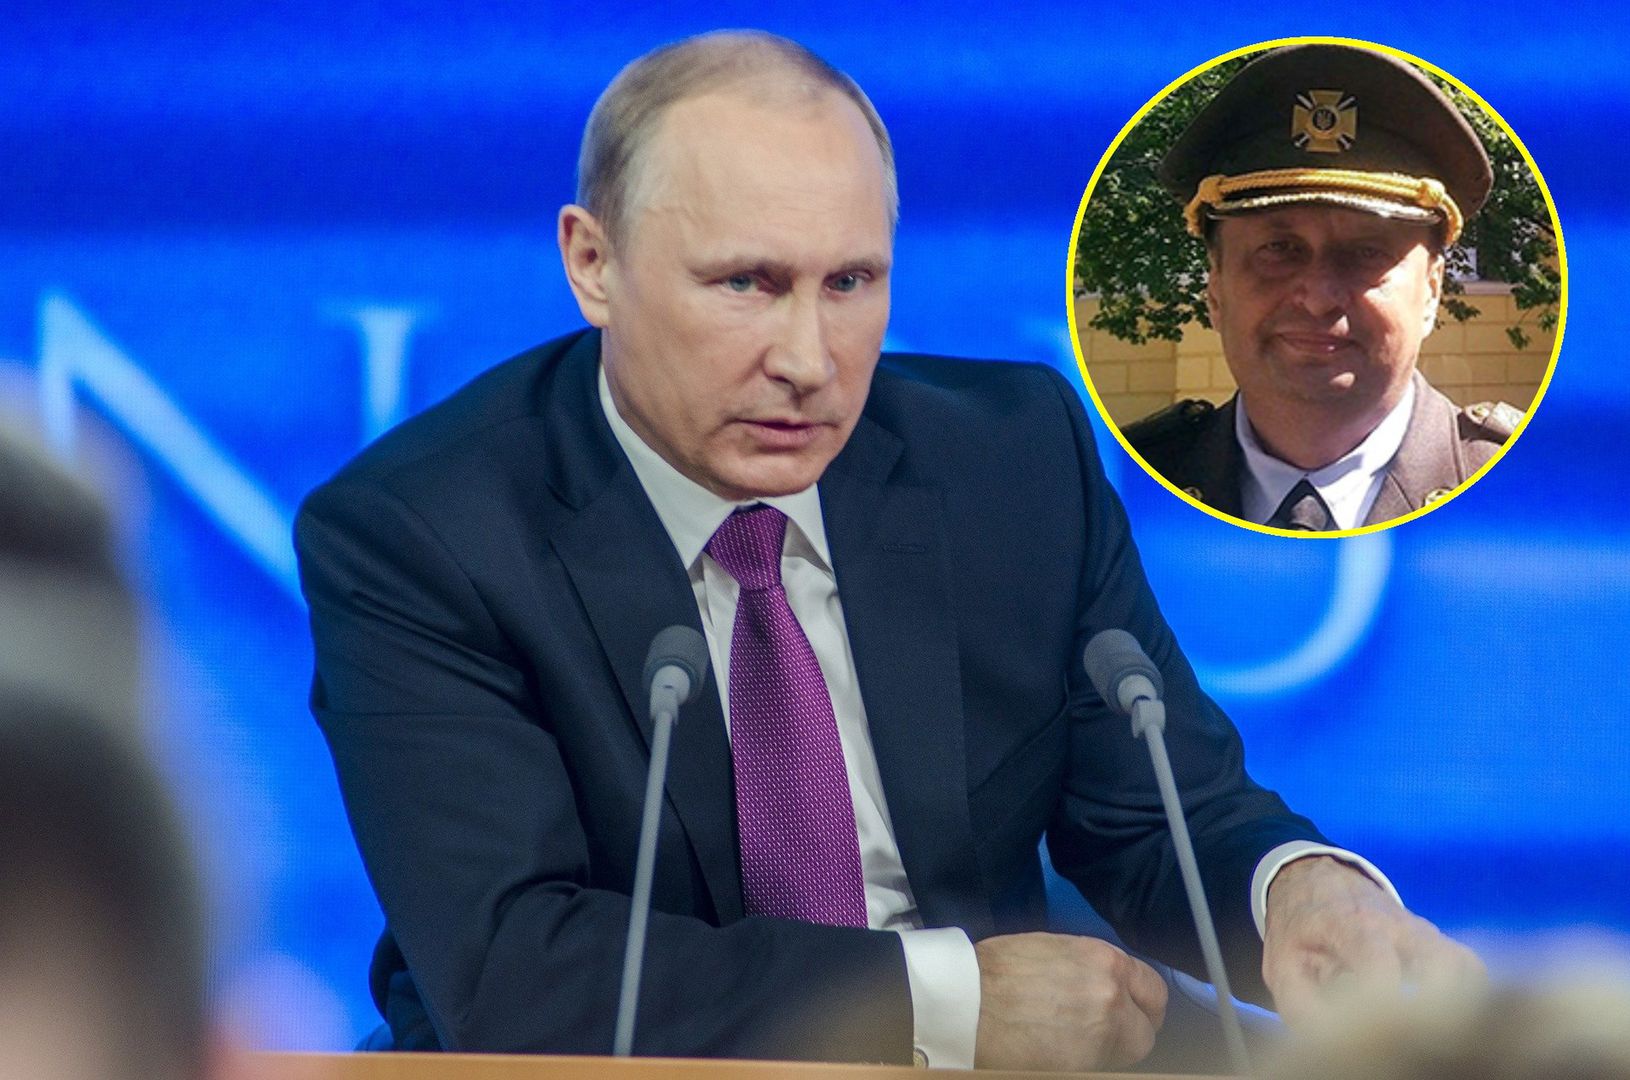 Obalenie Putina nic nie da? Ukraiński generał tłumaczy